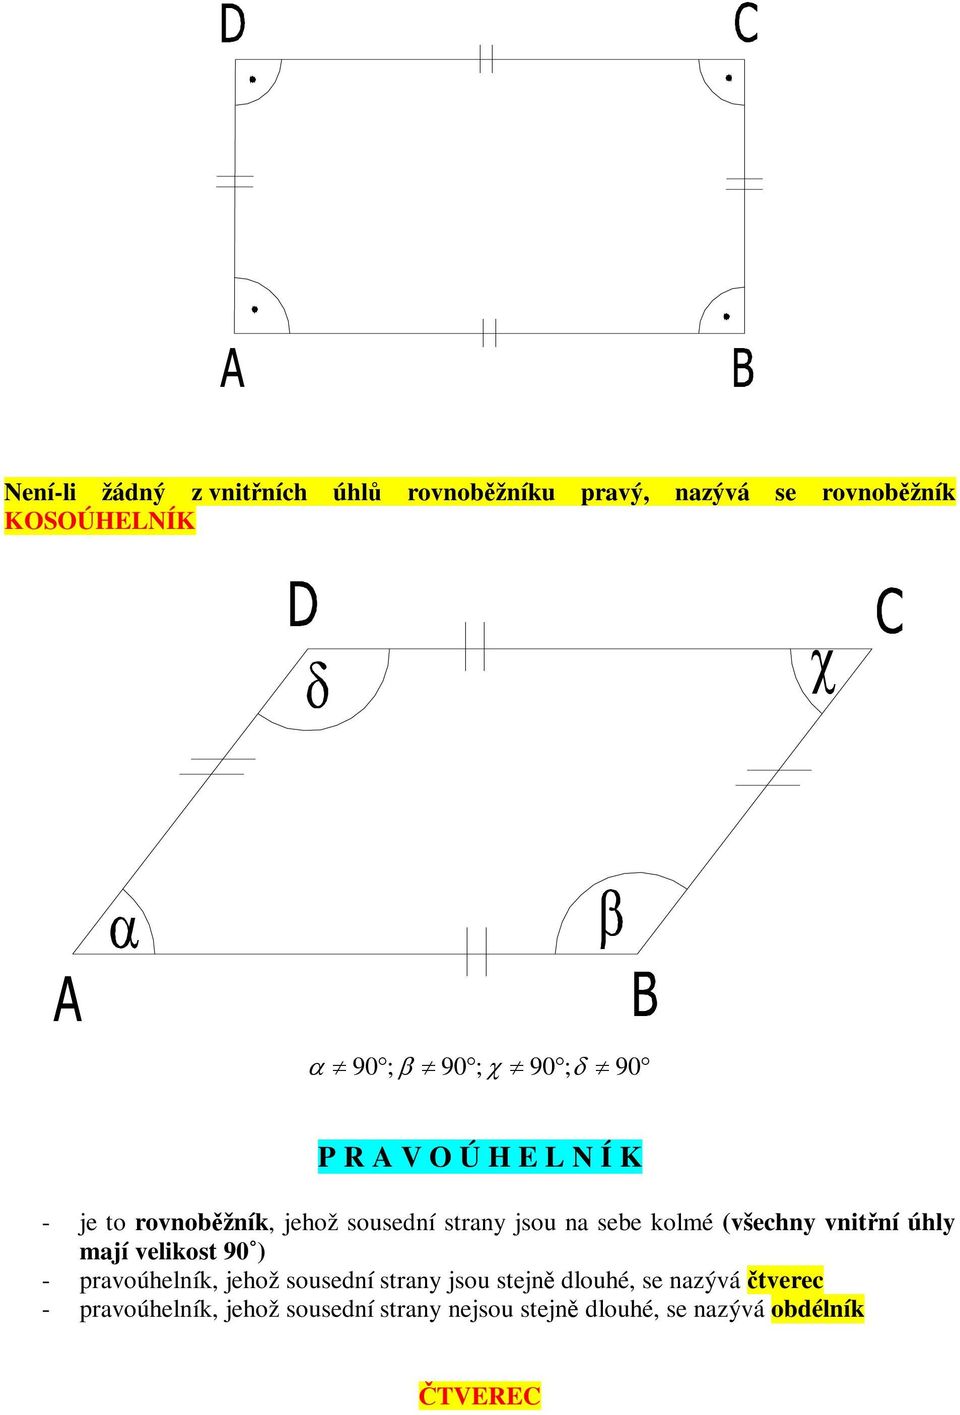 (všechny vnitní úhly mají velikost 90 ) - pravoúhelník, jehož sousední strany jsou stejn